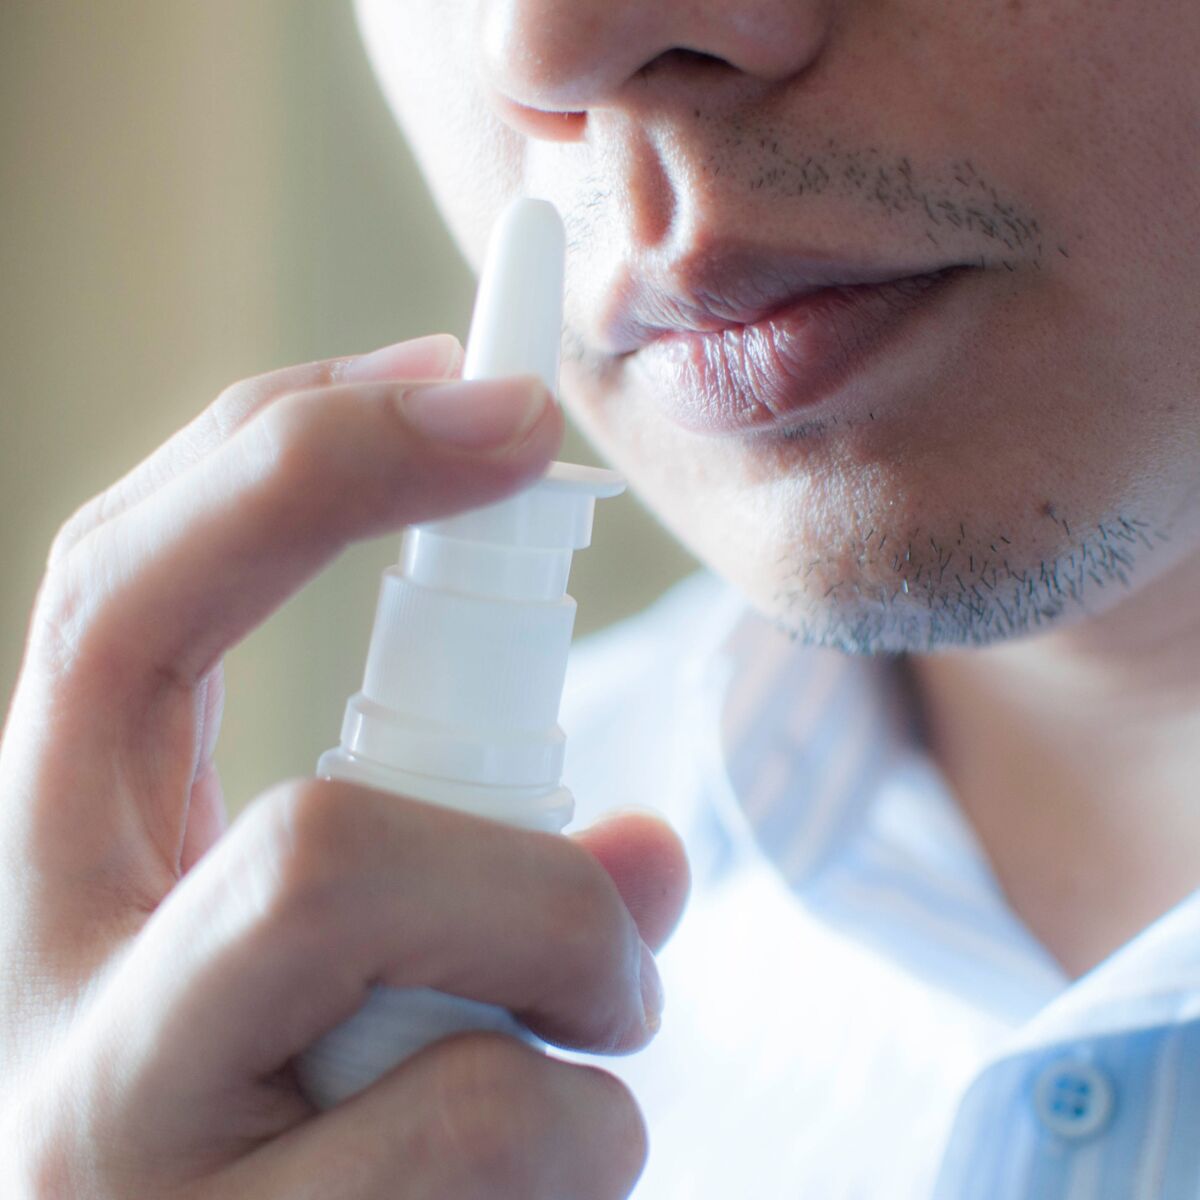 Hygiène nasale : pourquoi et comment bien nettoyer son nez ?